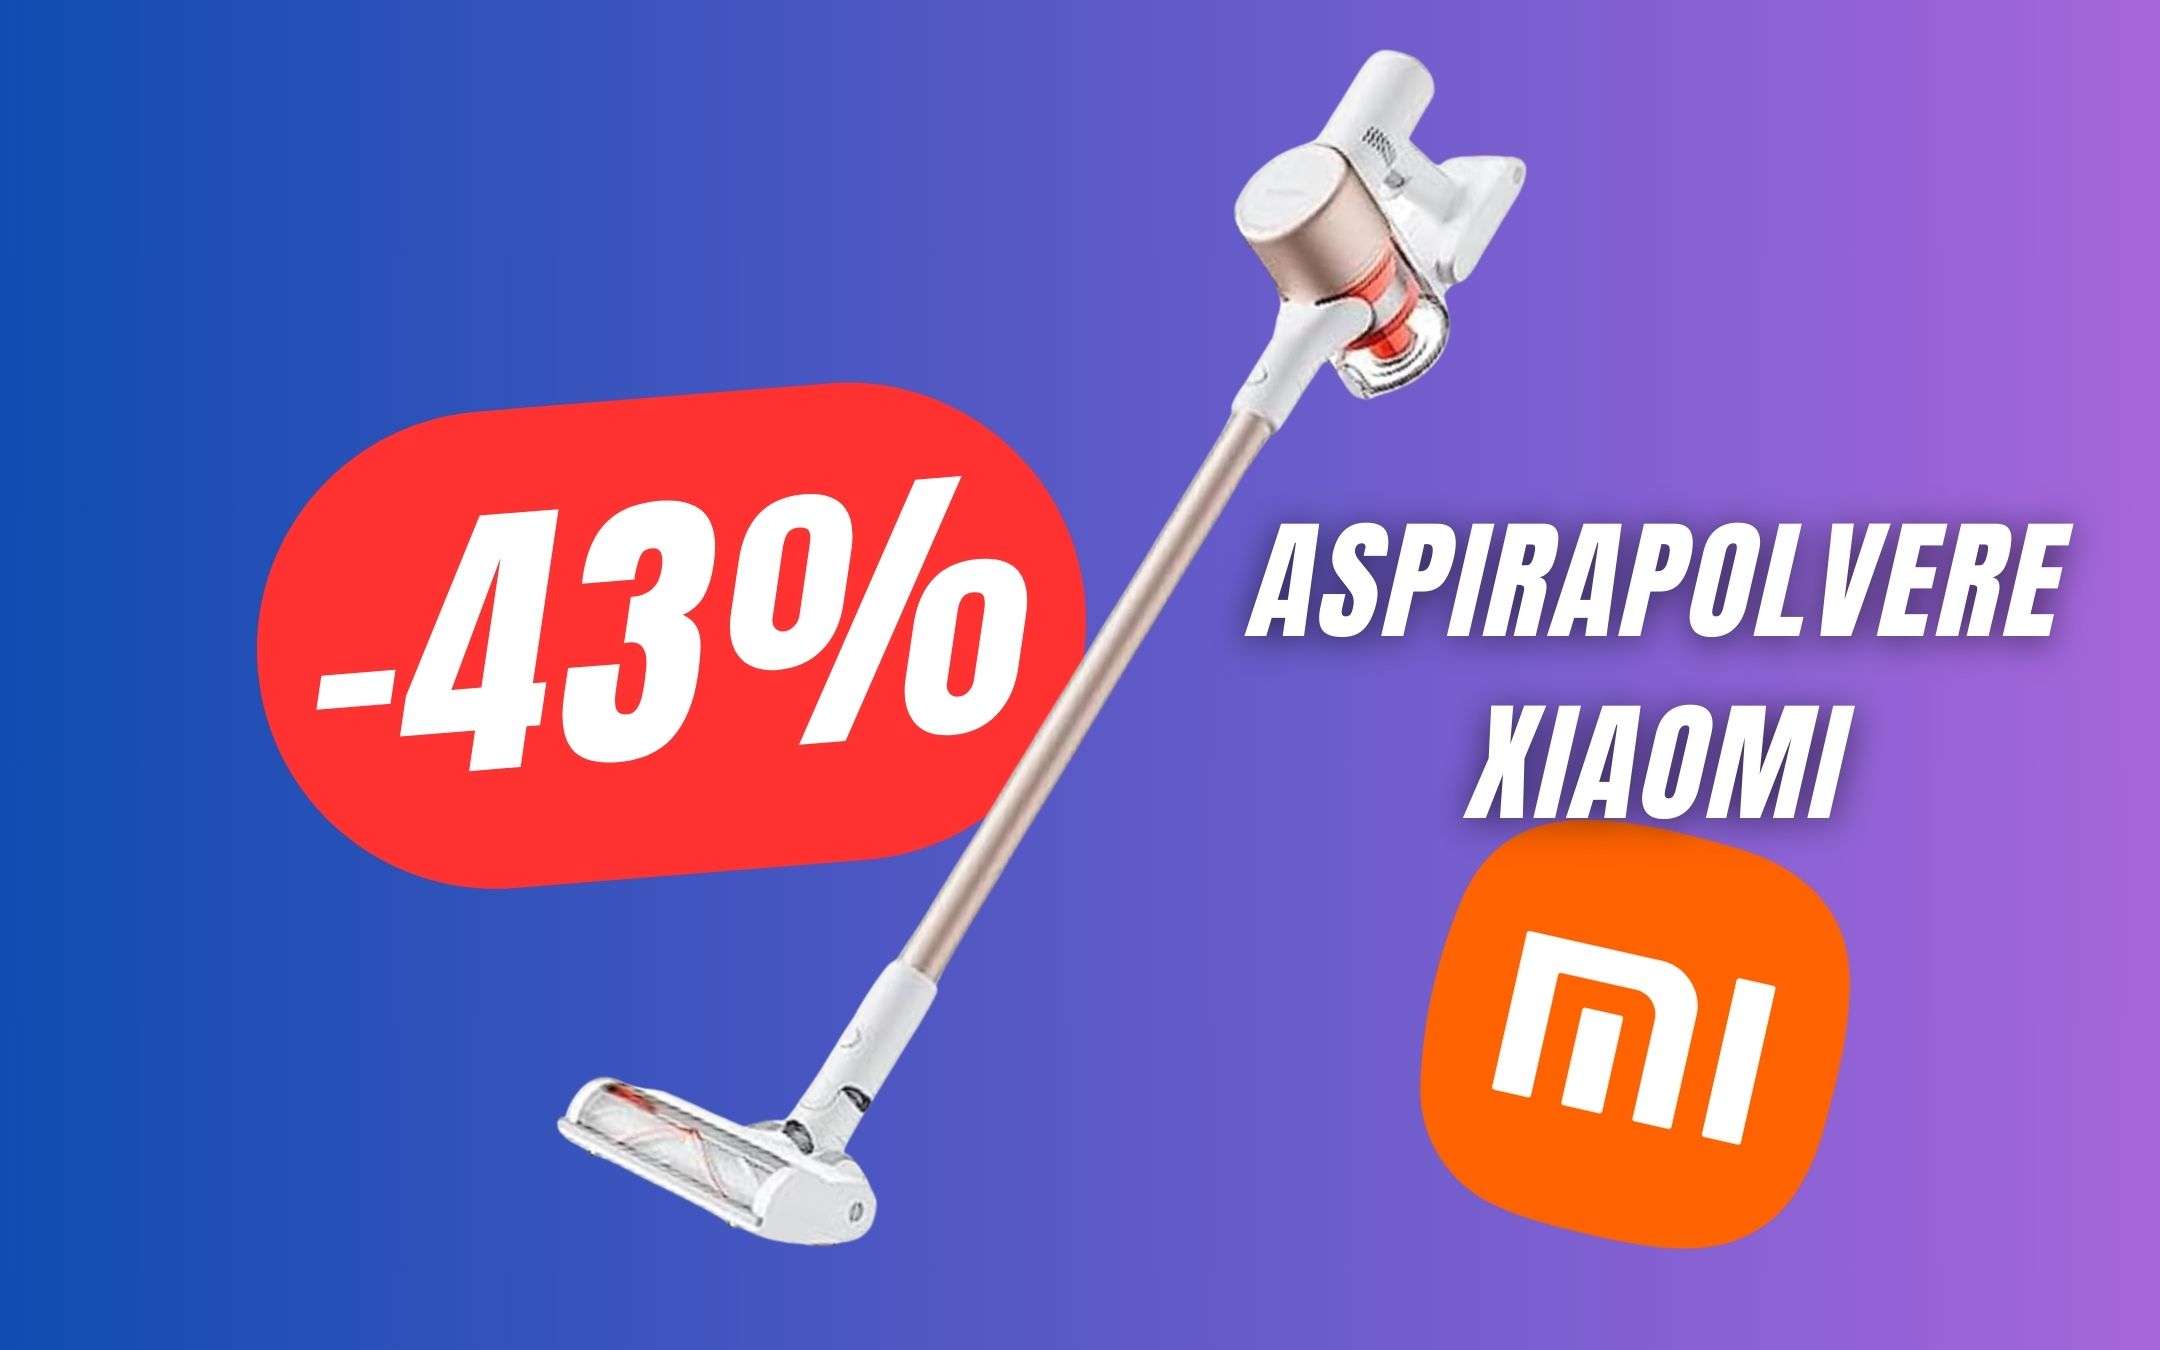 SCONTO FOLLE per l'Aspirapolvere Xiaomi (-43%)